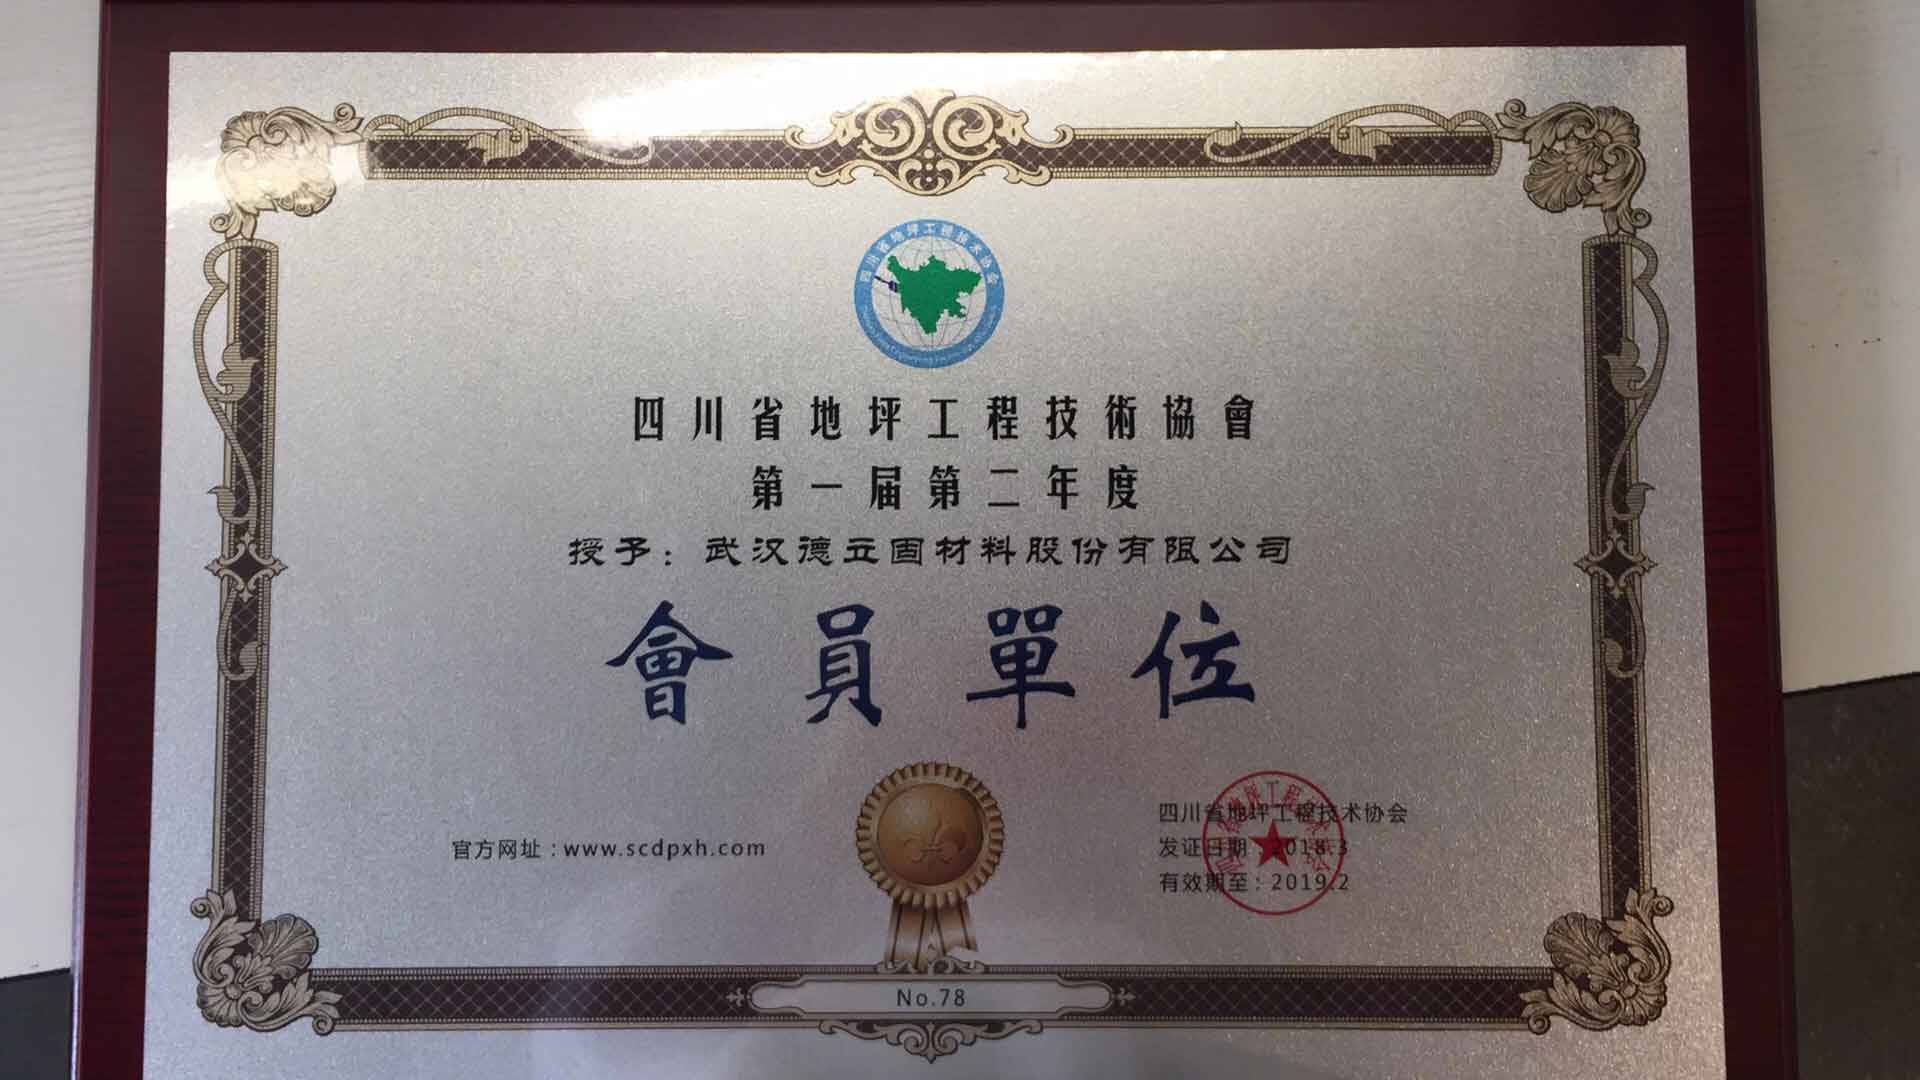 四川省地坪工程技术协会会员单位